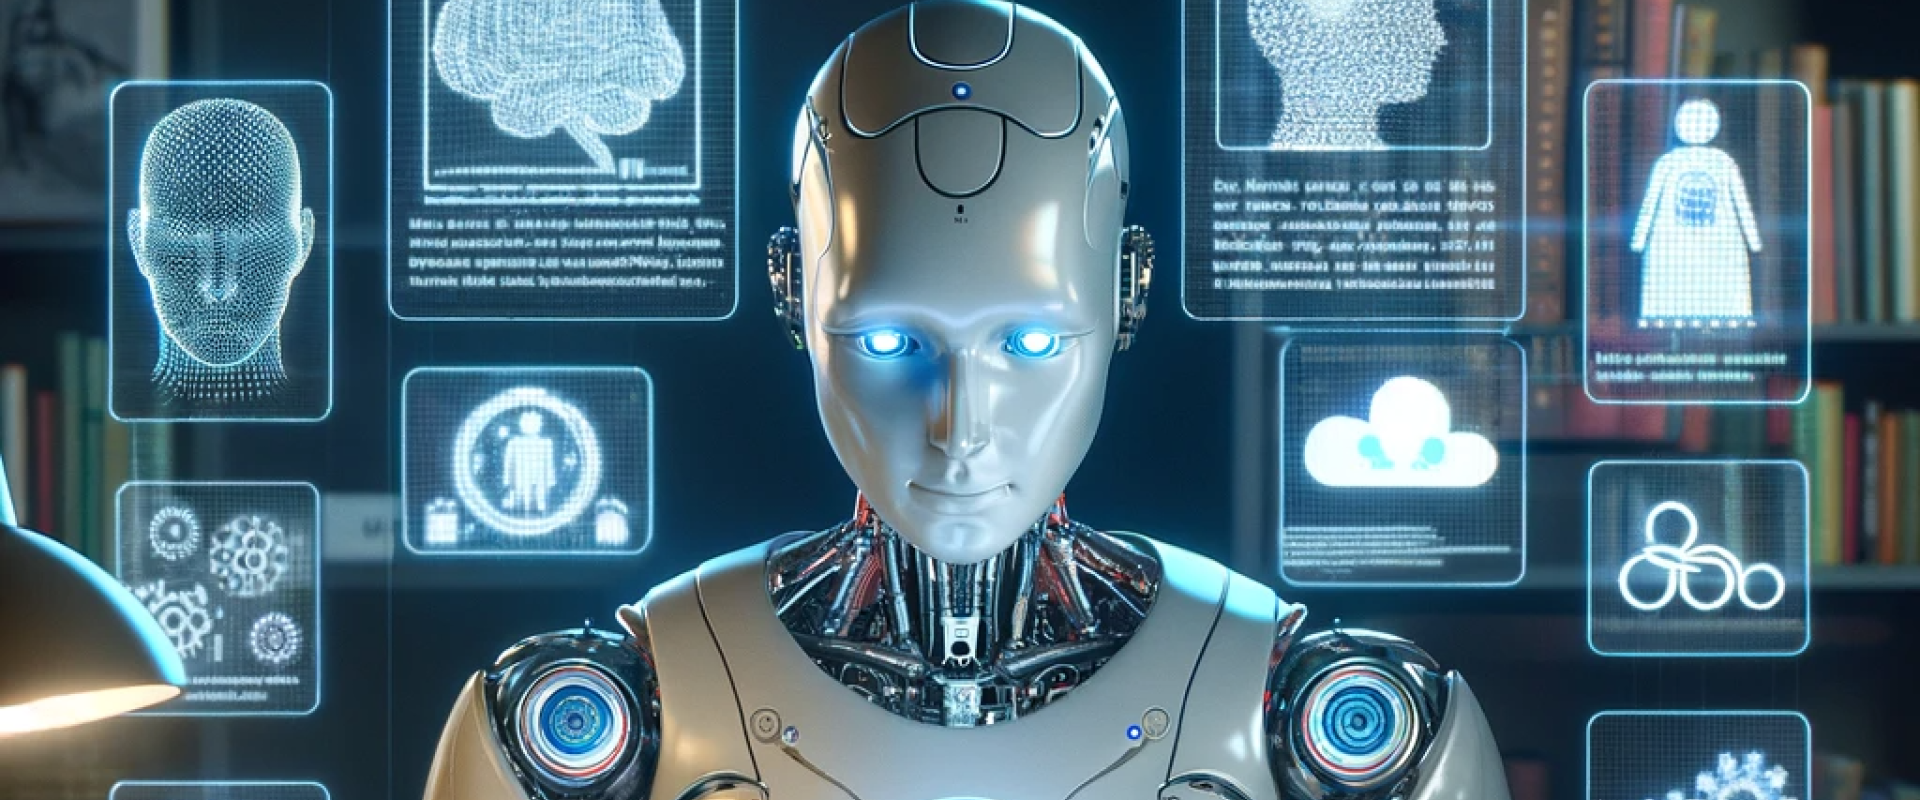 Ein konzeptionelles Bild für einen Blogartikel über KI und Ethik. Die Szene zeigt einen humanoiden Roboter, der an einem Schreibtisch sitzt und ein Buch mit dem Titel 